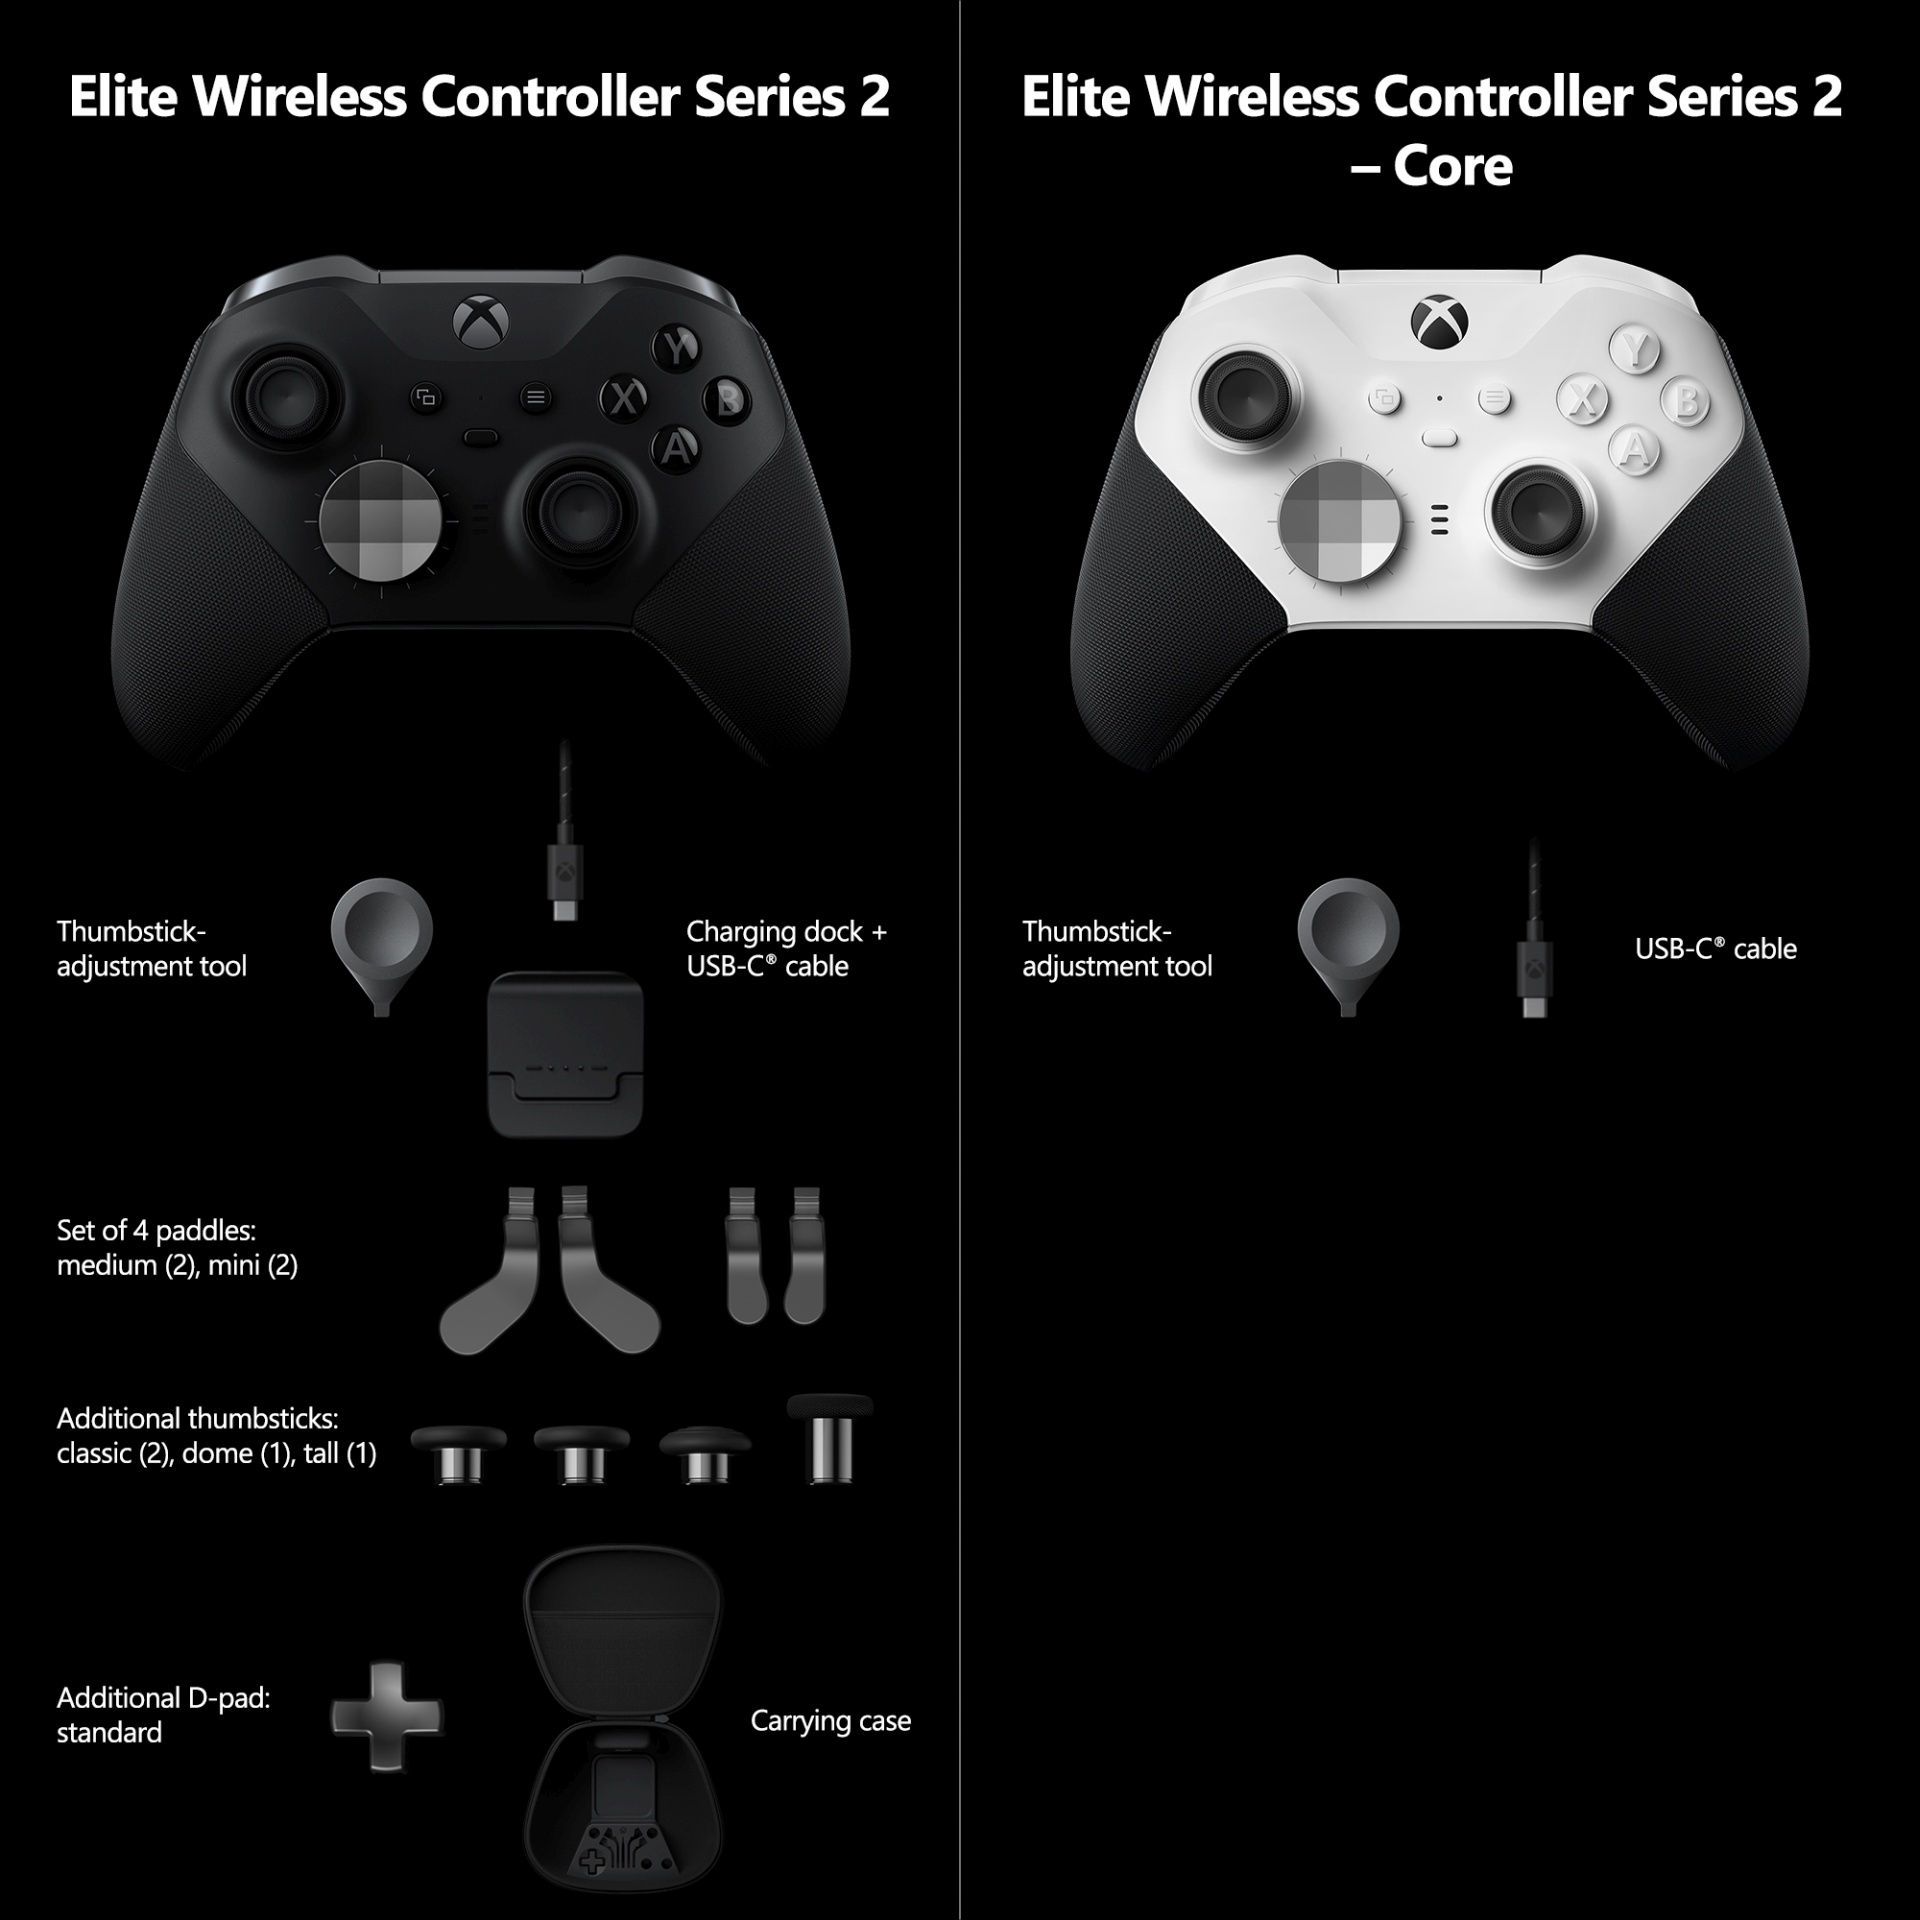 進化し続ける Xbox Elite ワイヤレス コントローラー シリーズ 2